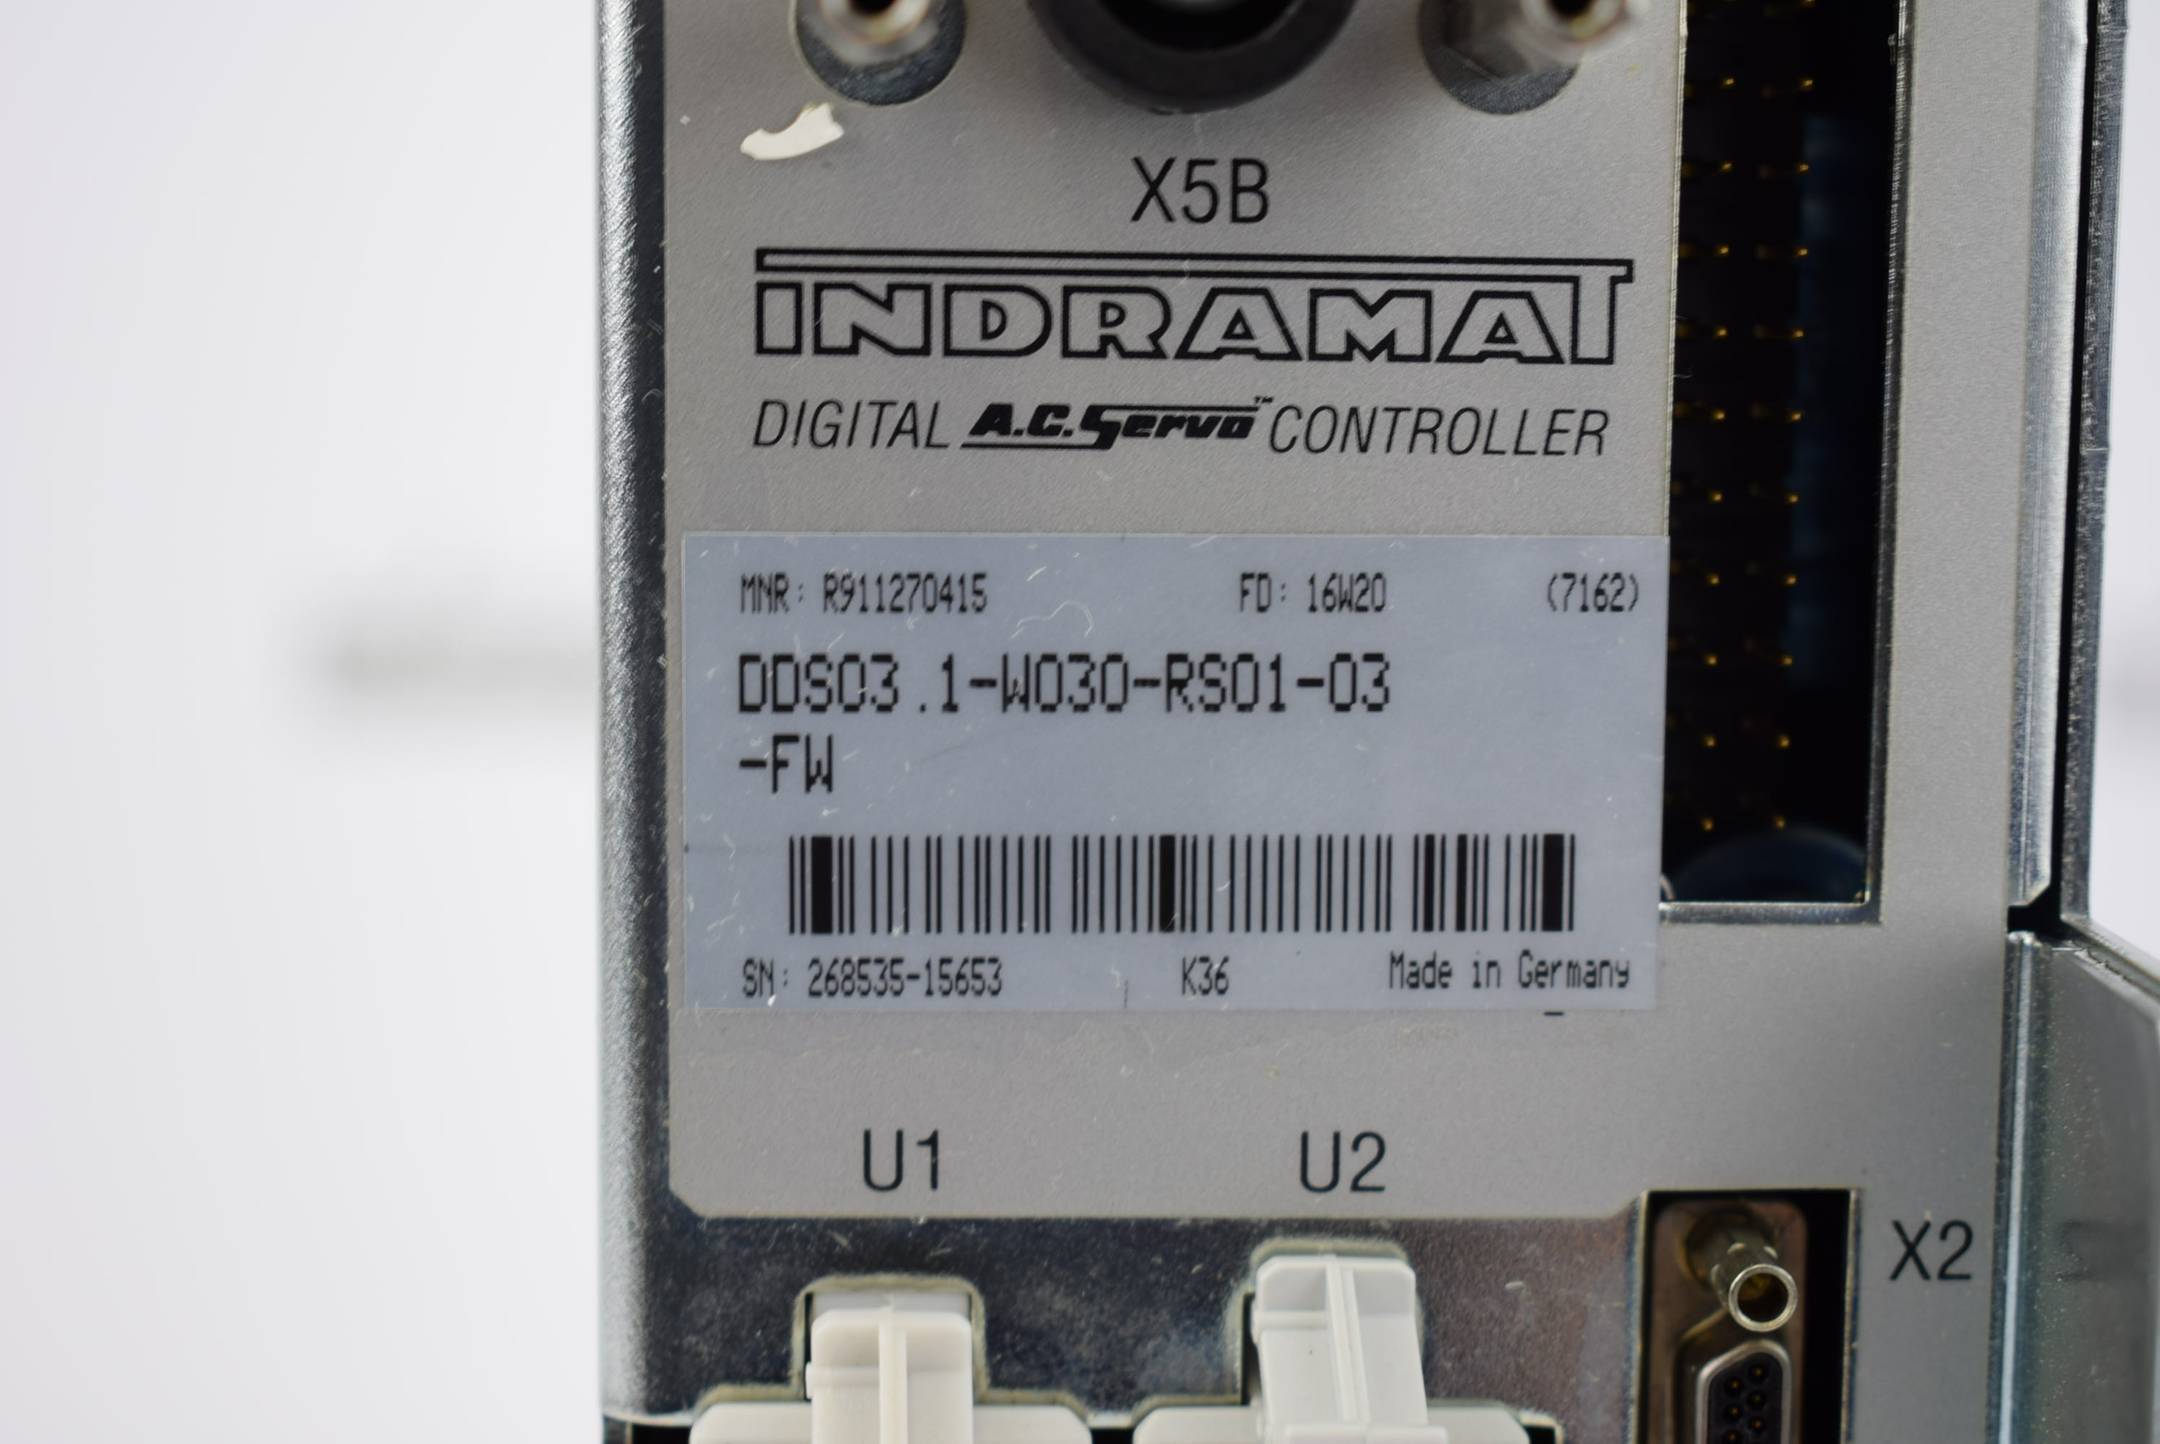 Bosch Rexroth Indramat Digital A.C. Servo controller DDS03.1-W030-RS01-03-FW
